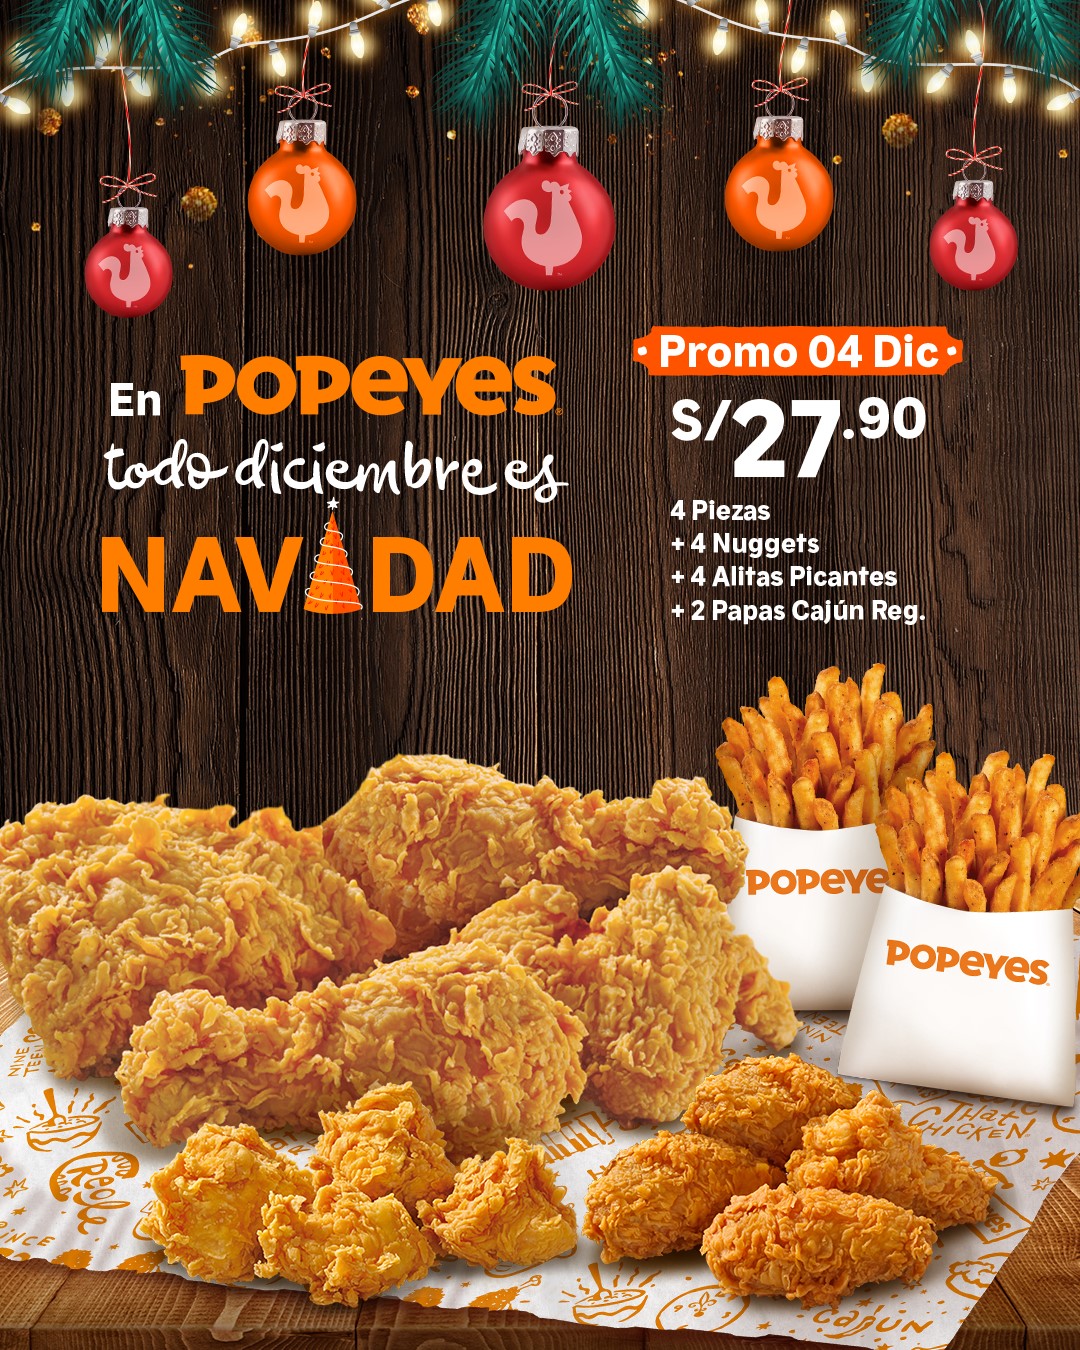 Popeyes Peru December 4 Promo